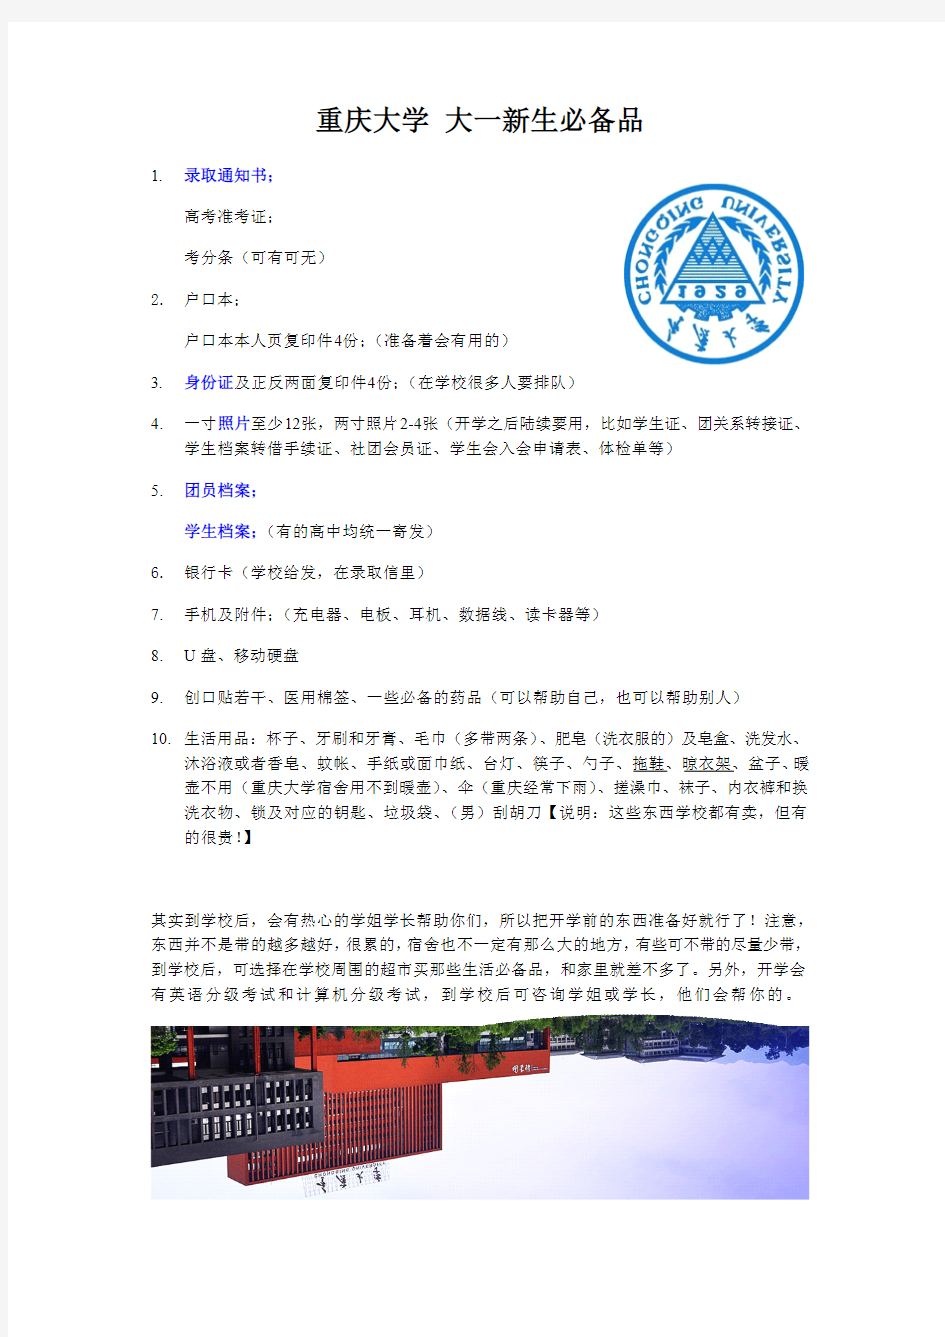 重庆大学大一新生必备品列表